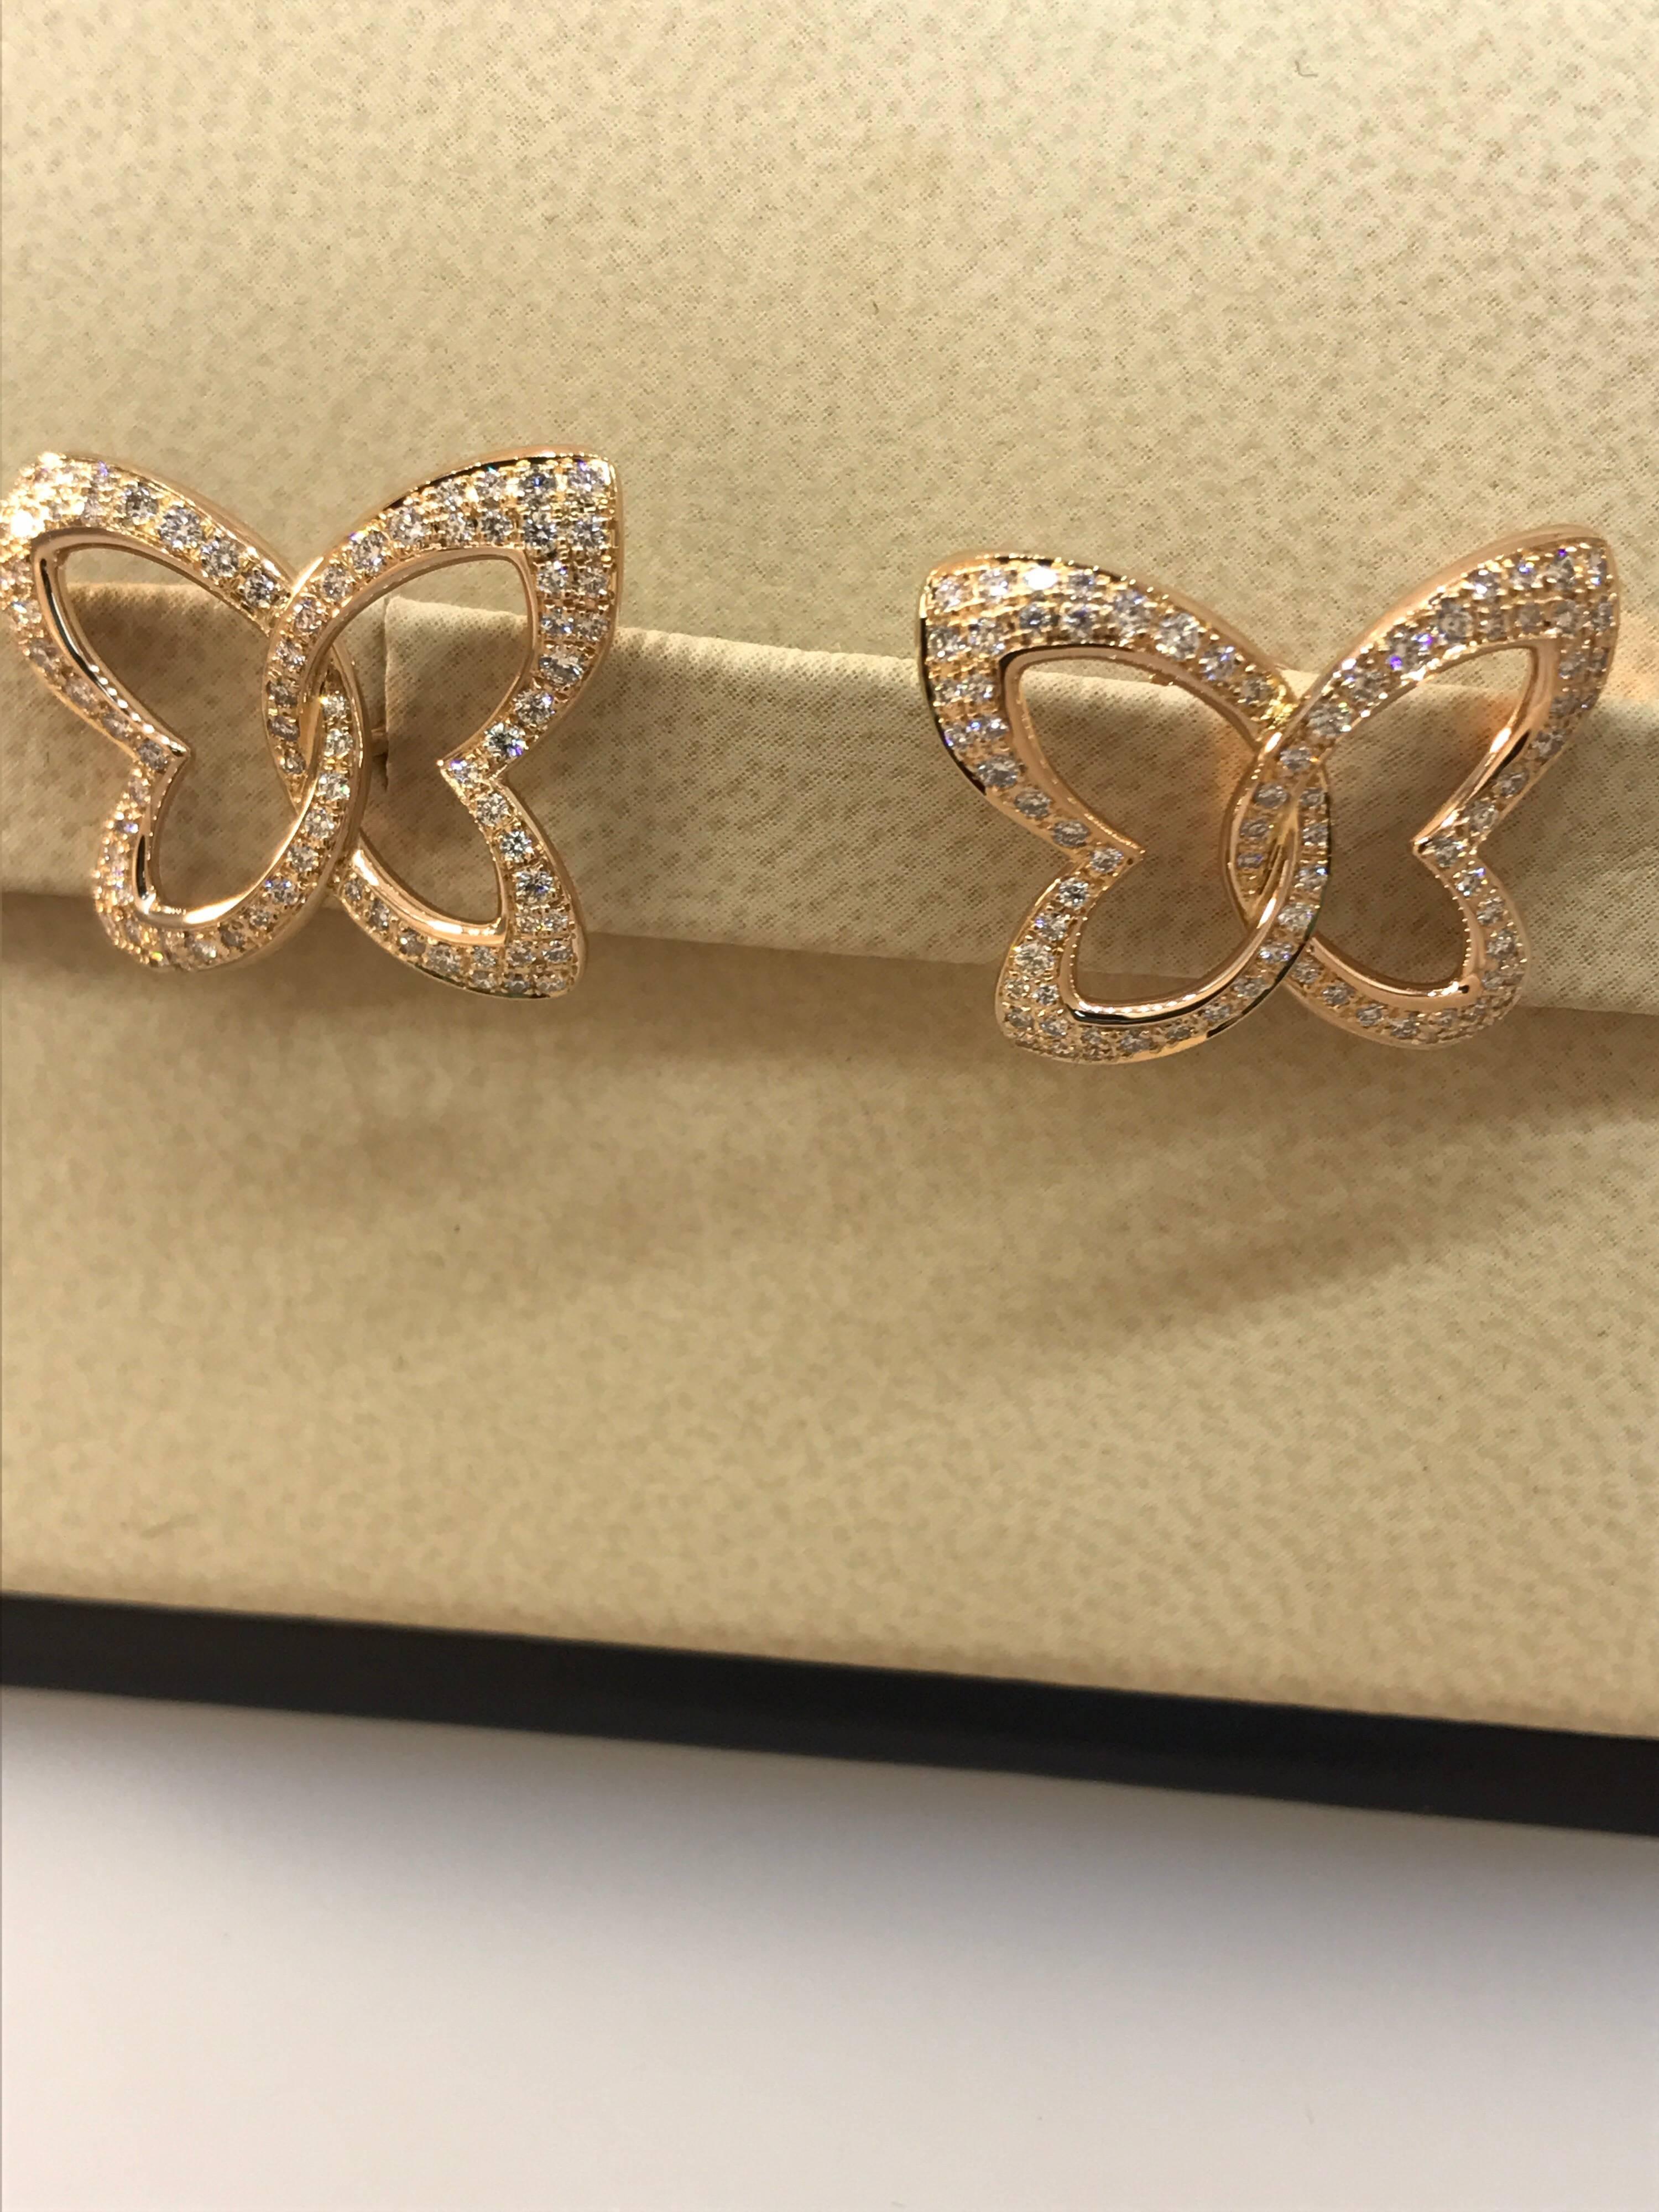 Chopard Women's 18 Karat Gold and Diamond Butterfly Stud Earrings 83/7445-5002 For Sale 2